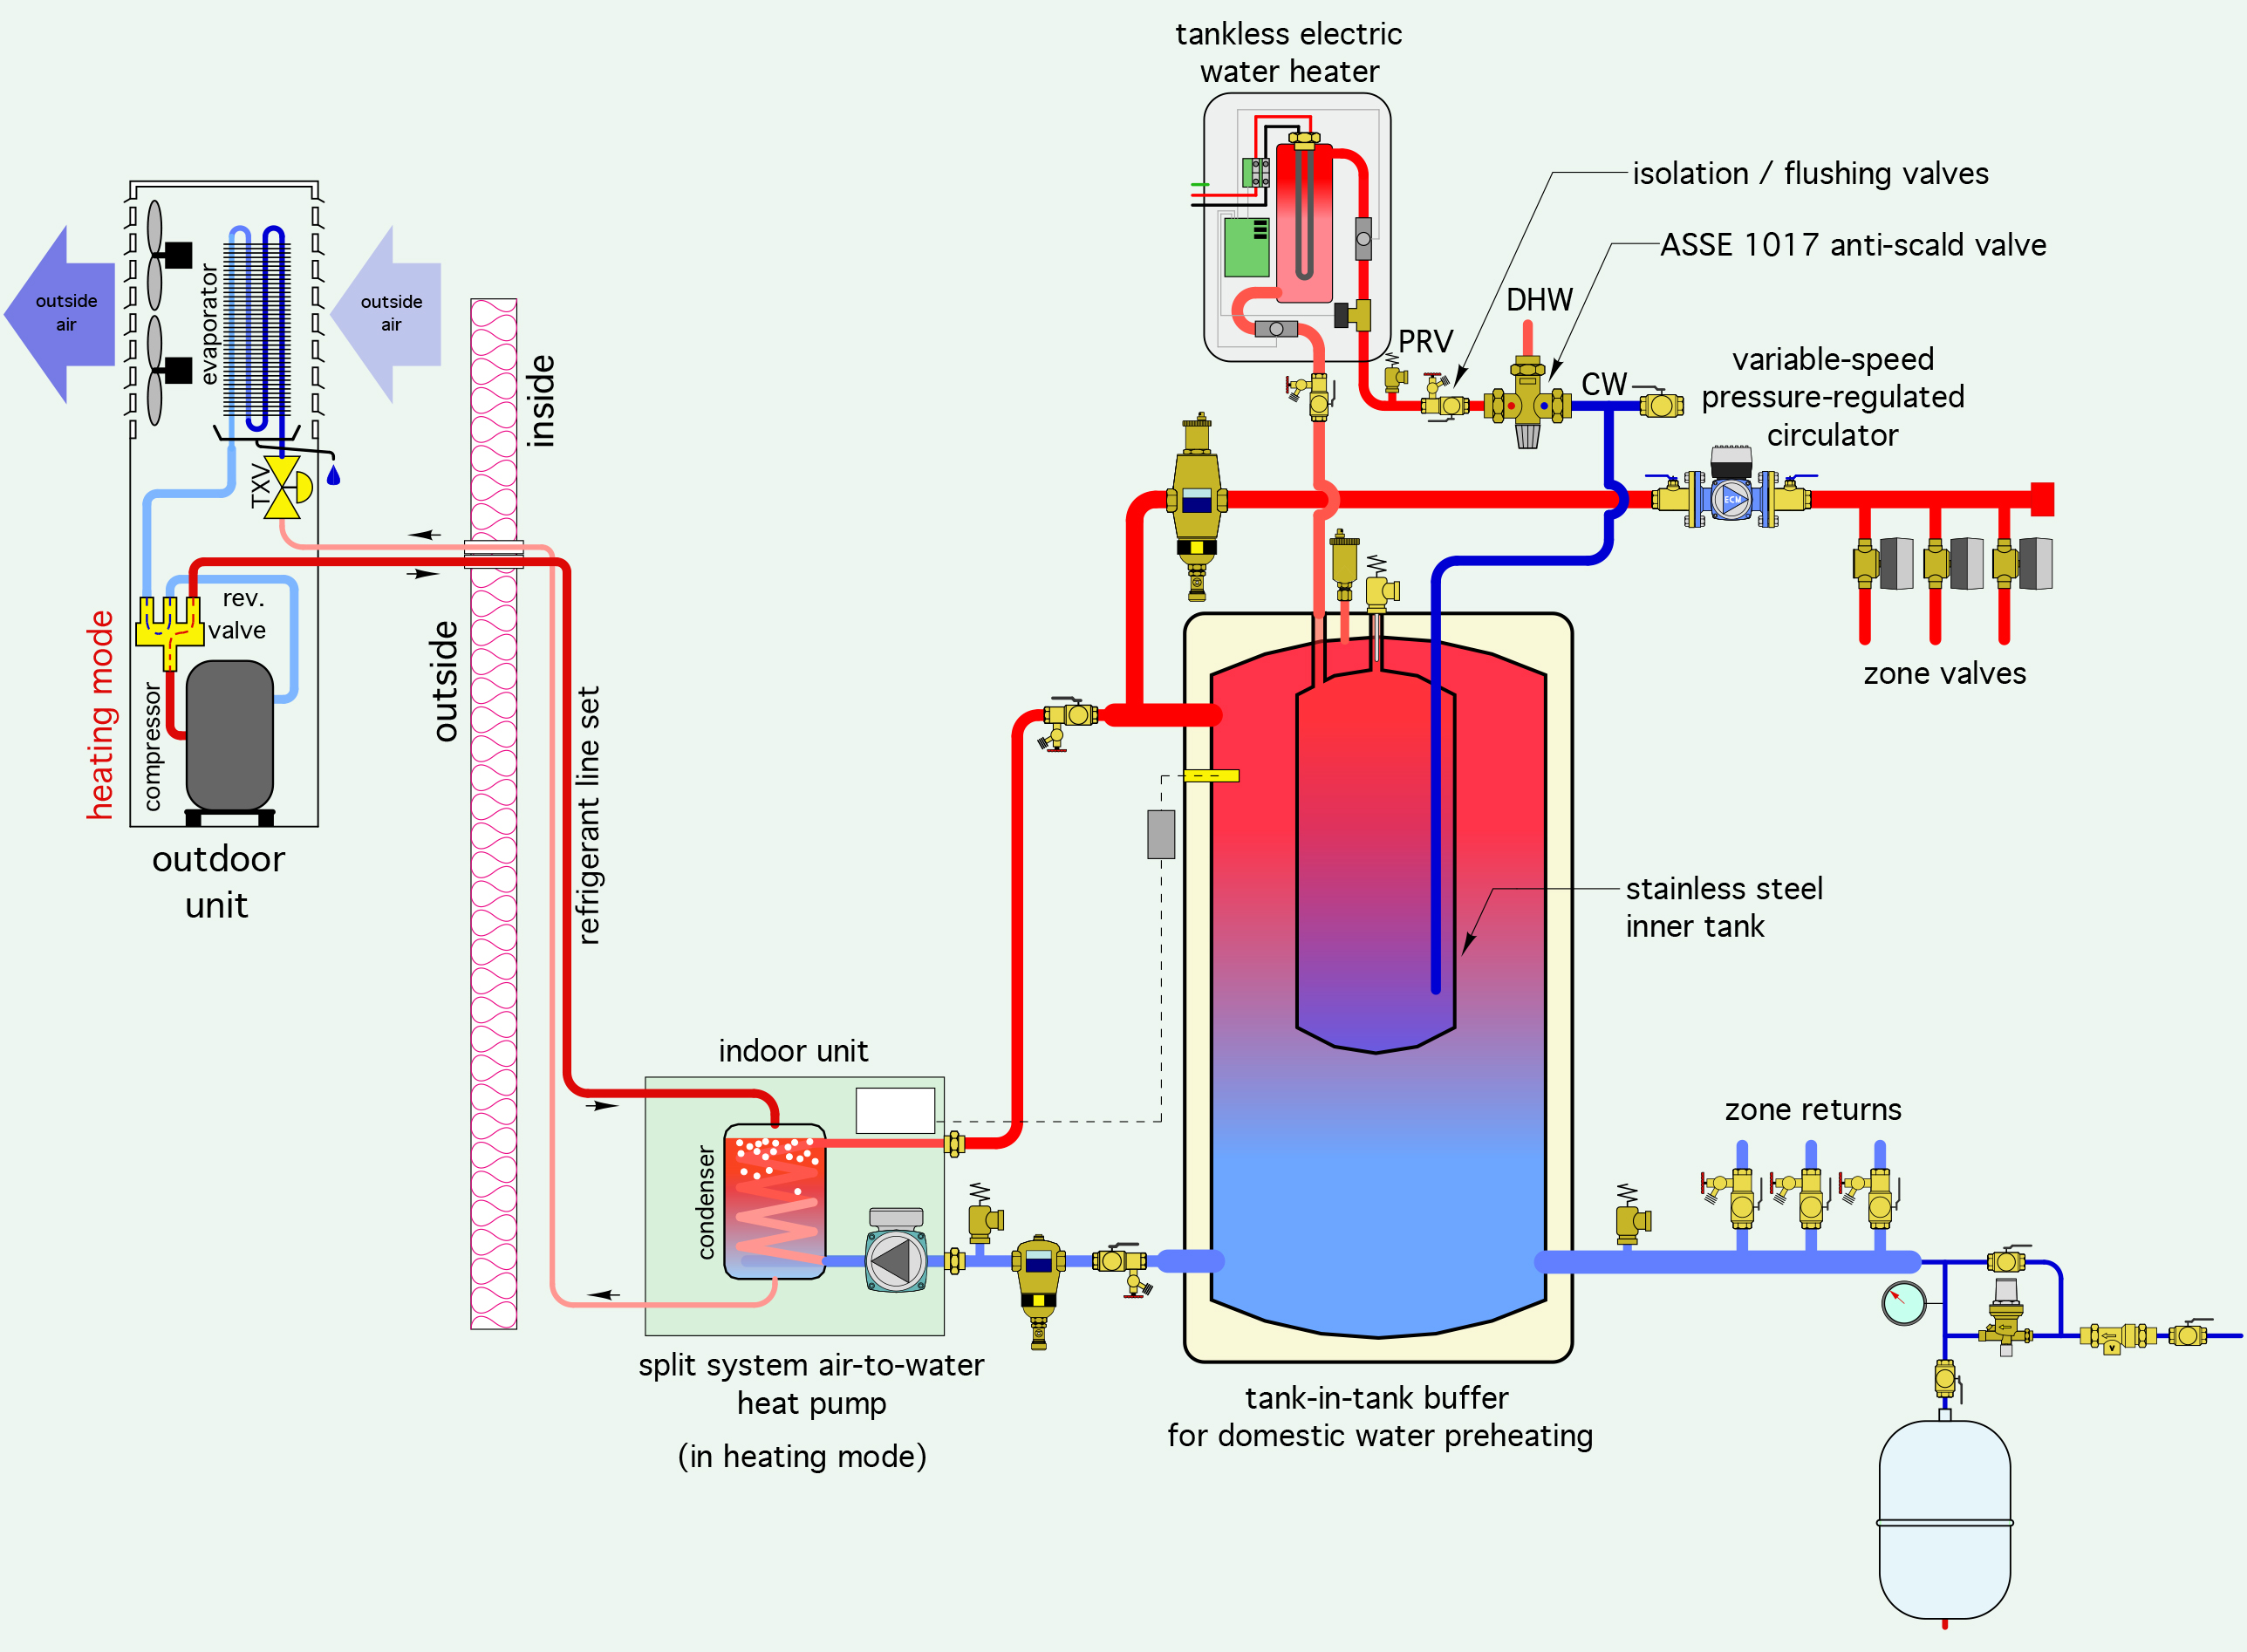 air-to-water-heat-pump-schematic